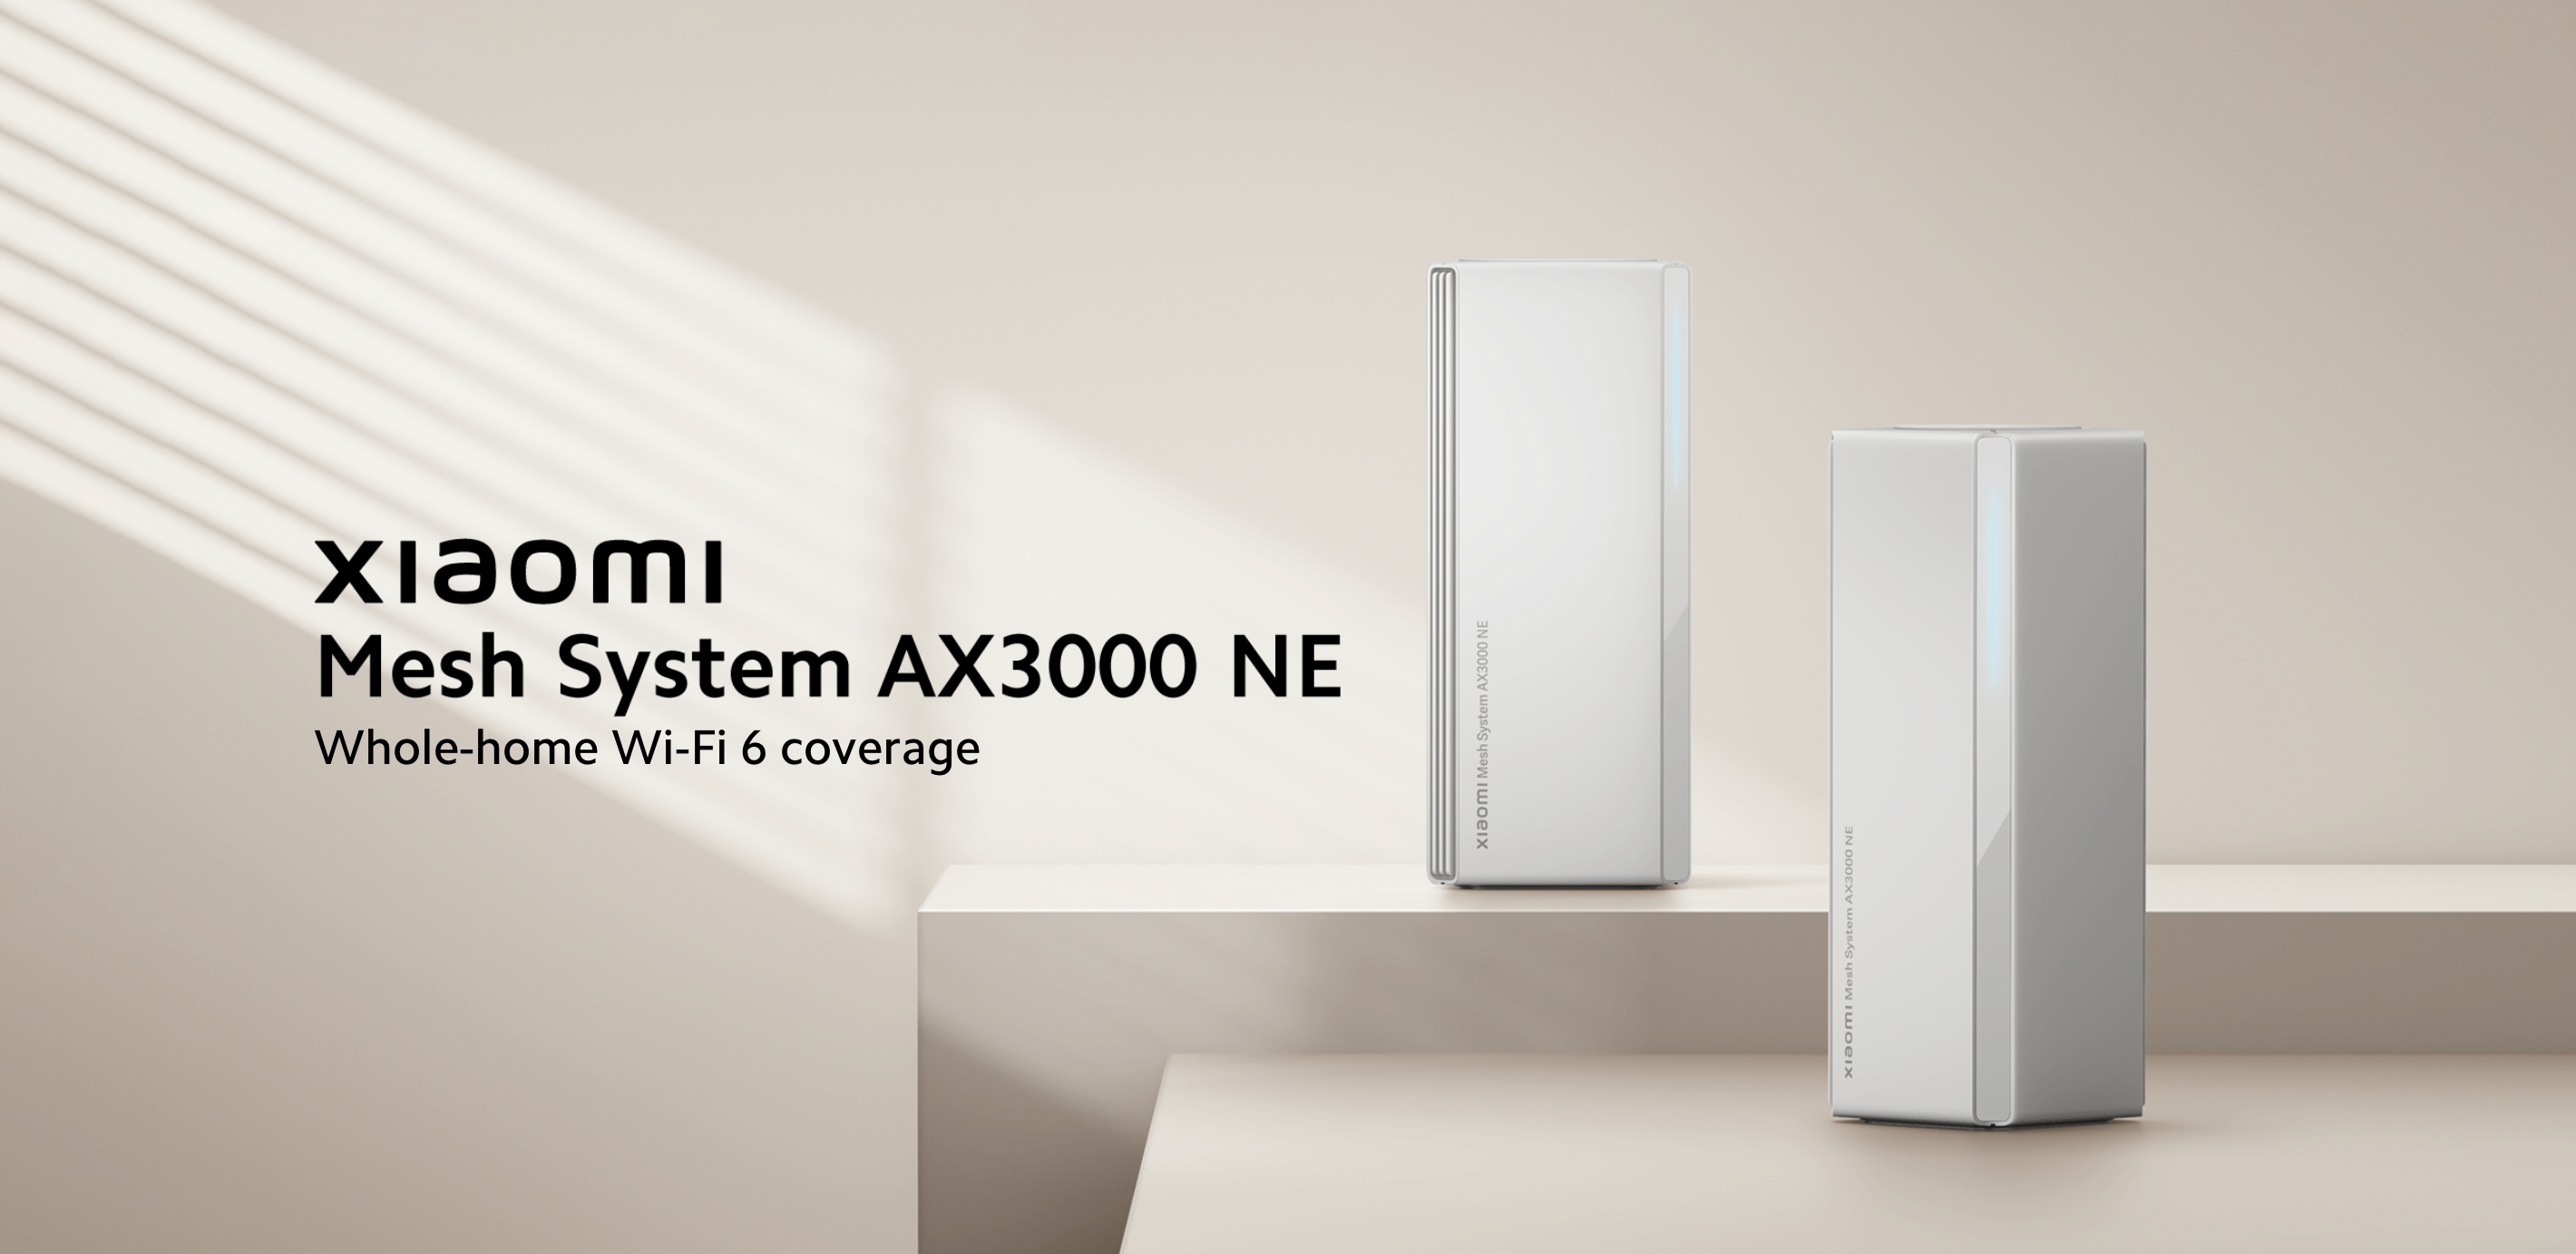 Xiaomi hat das AX3000 NE Mesh System mit WiFi 6 Unterstützung auf dem globalen Markt eingeführt 